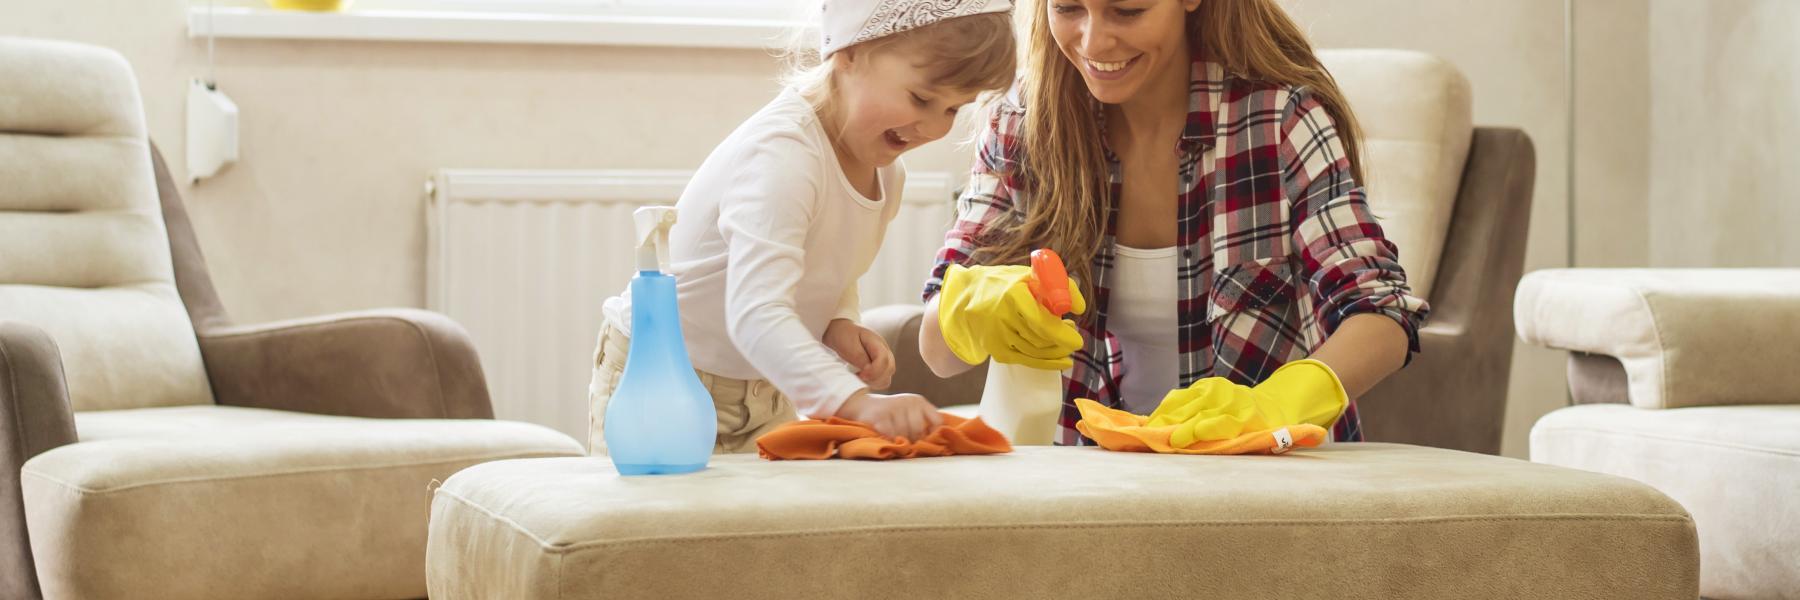 كيف يمكنك تعليم أطفالك المساعدة في المهام المنزلية بسهولة؟ 